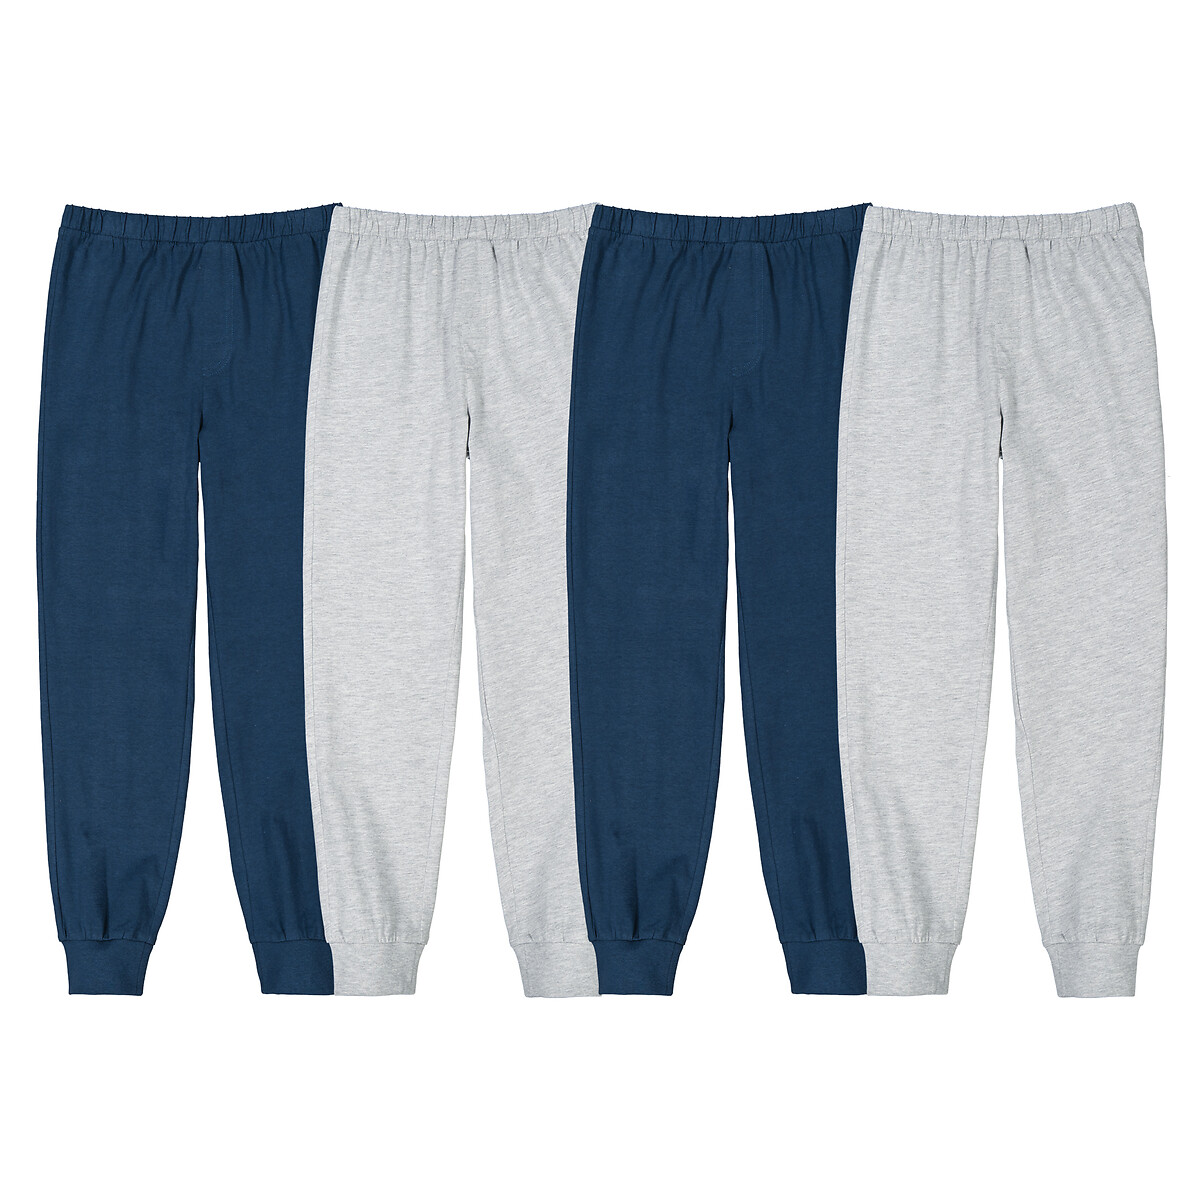 Комплект из четырех брюк пижамных из джерси 4 года - 102 см синий комплект из 2 пижамных шорт из джерси для мальчиков bedlam синий